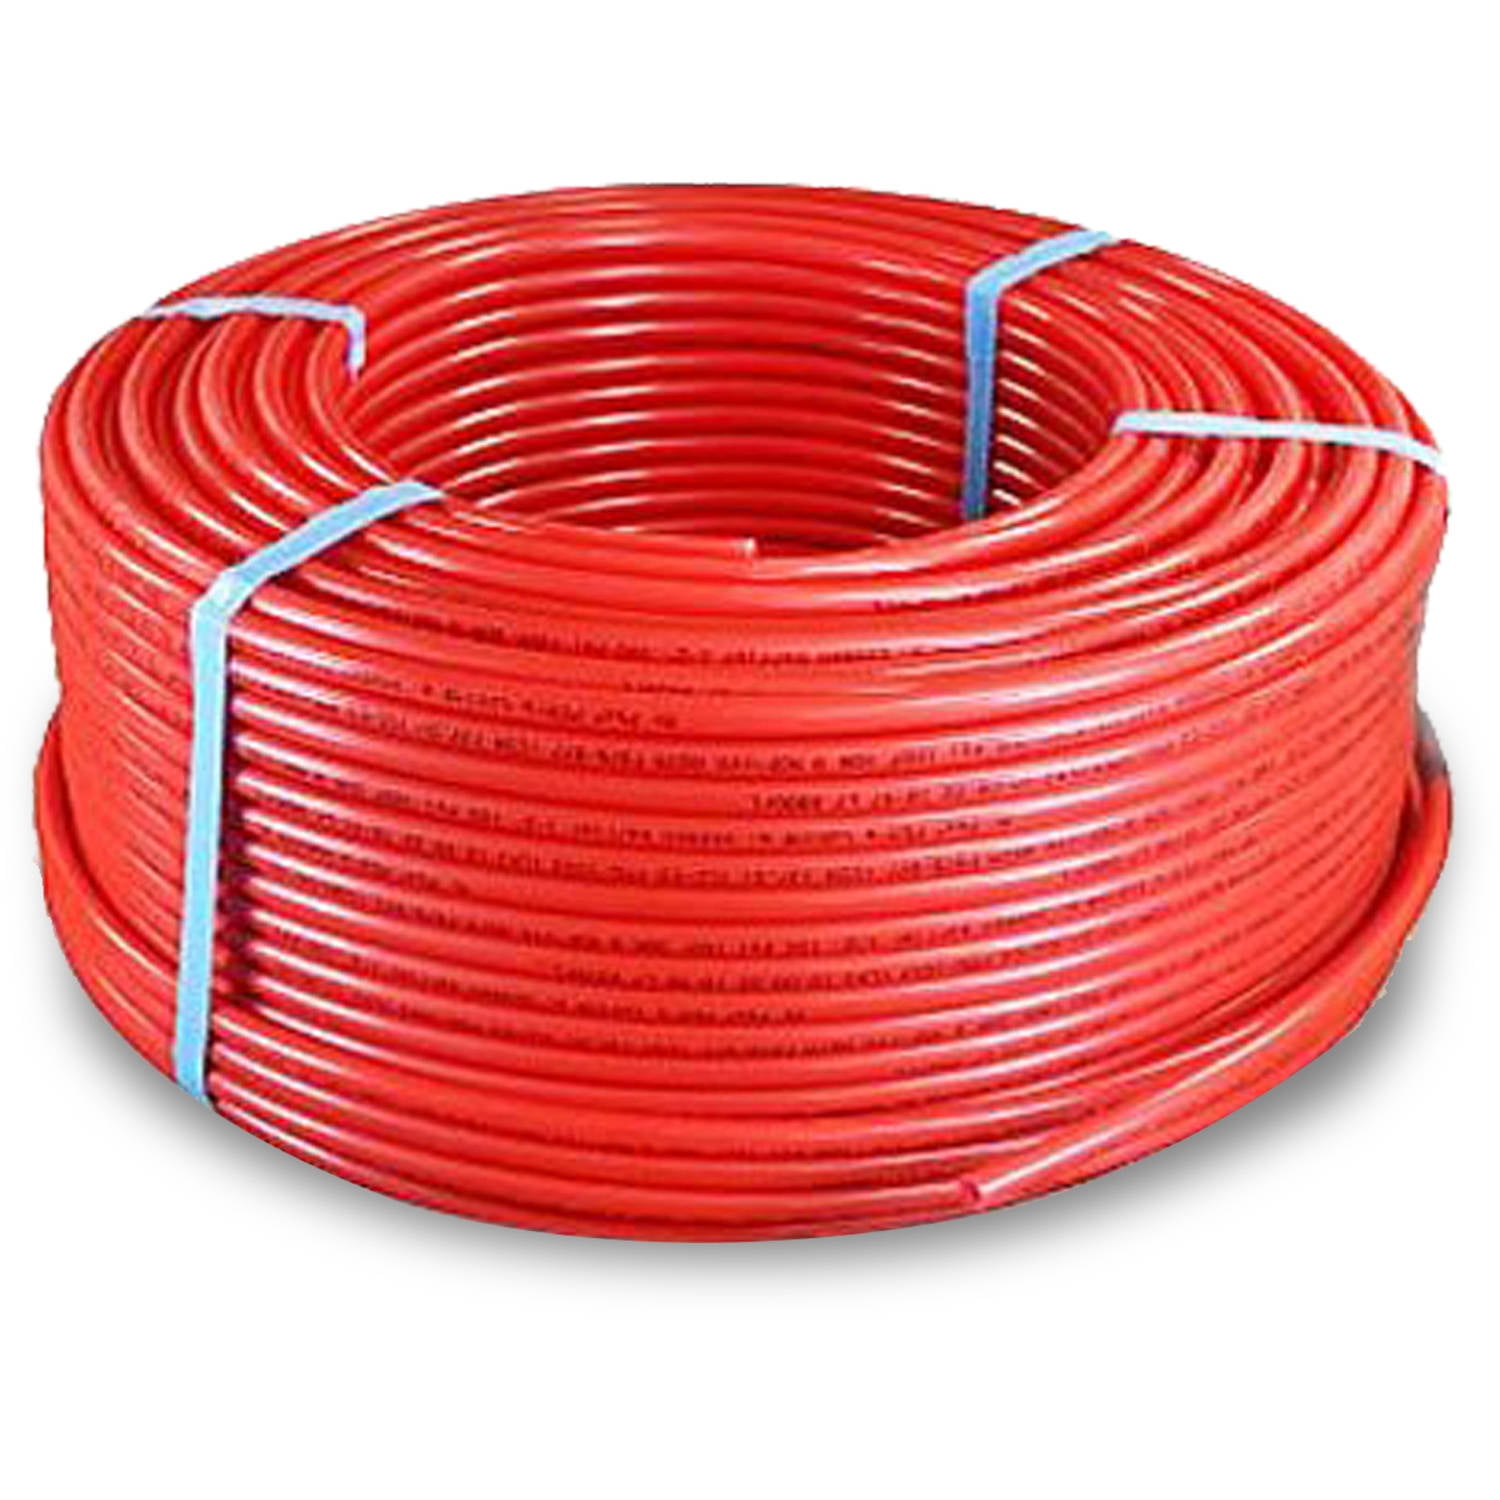 3/4 Inch x 100 Feet Red Pexflow PFR-R34100 Oxygen Barrier PEX Tubing 